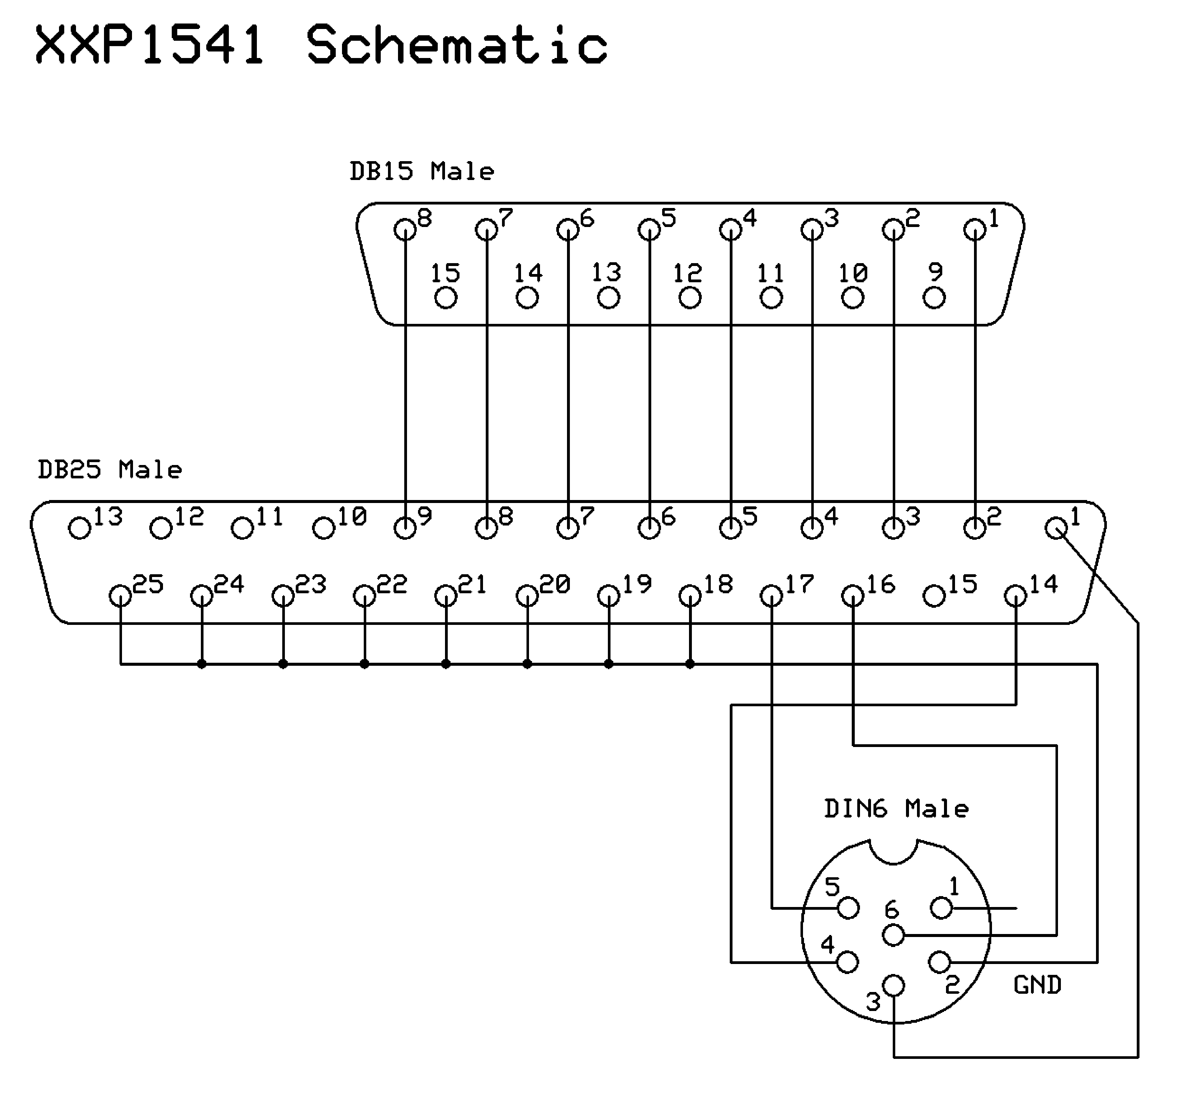 XXP1541 schematic